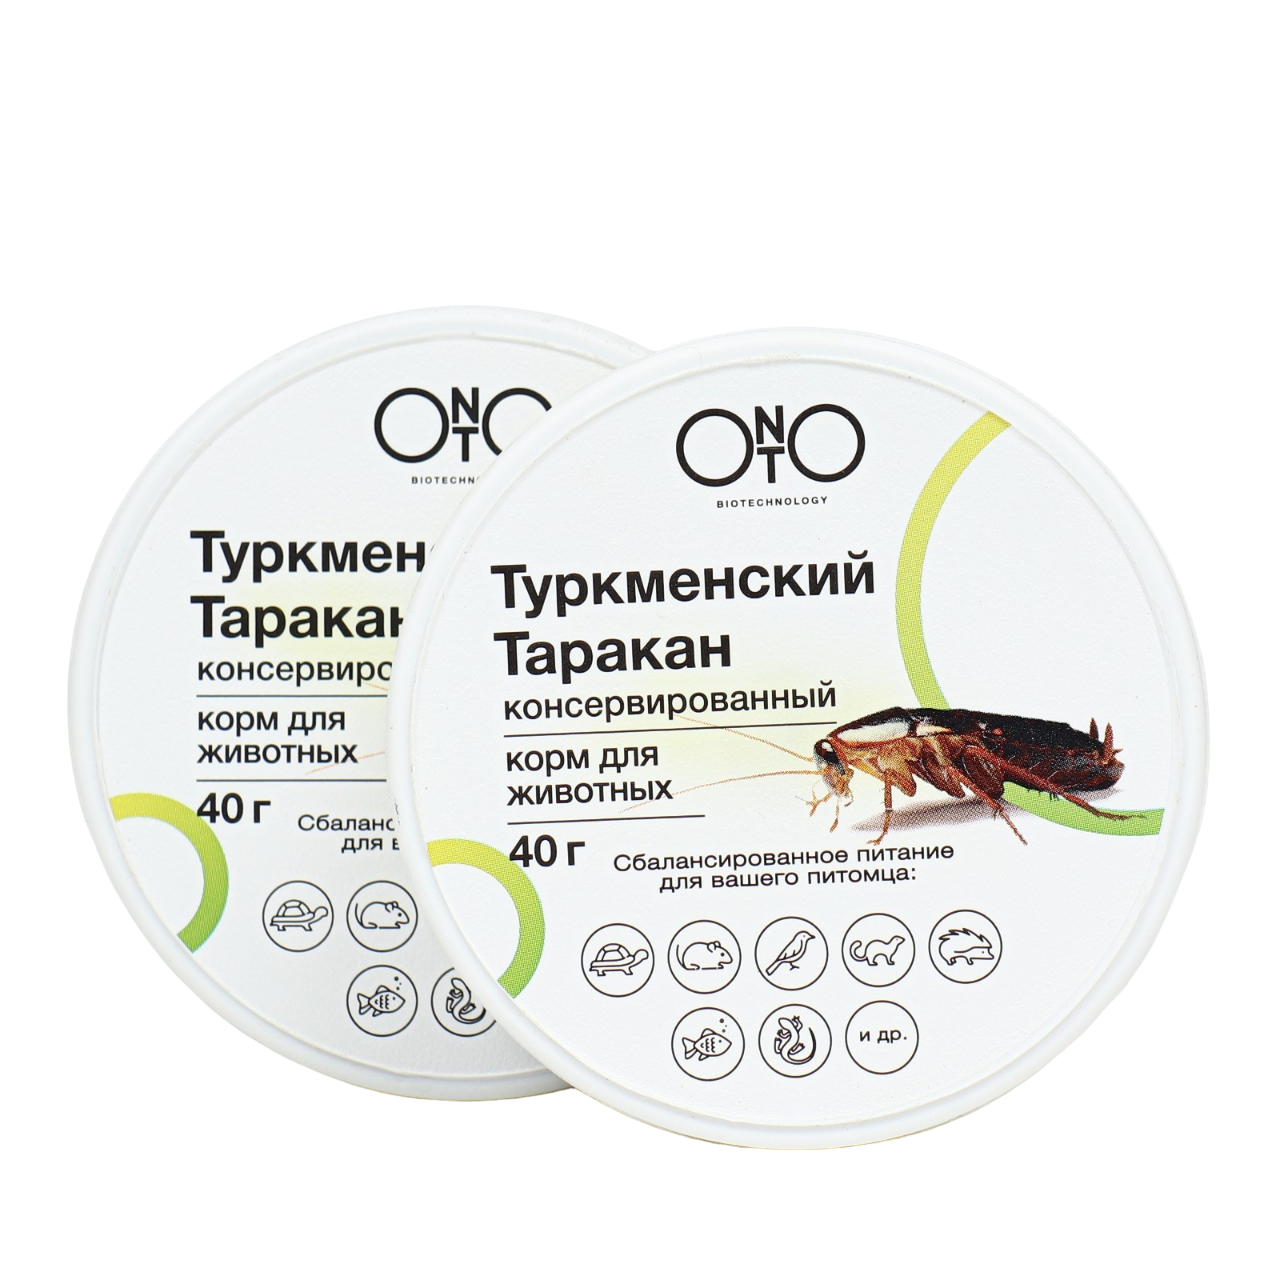 ONTO АКЦИЯ 1+1!Корм ONTO для животных, туркменский таракан , консервированный 40г+40г